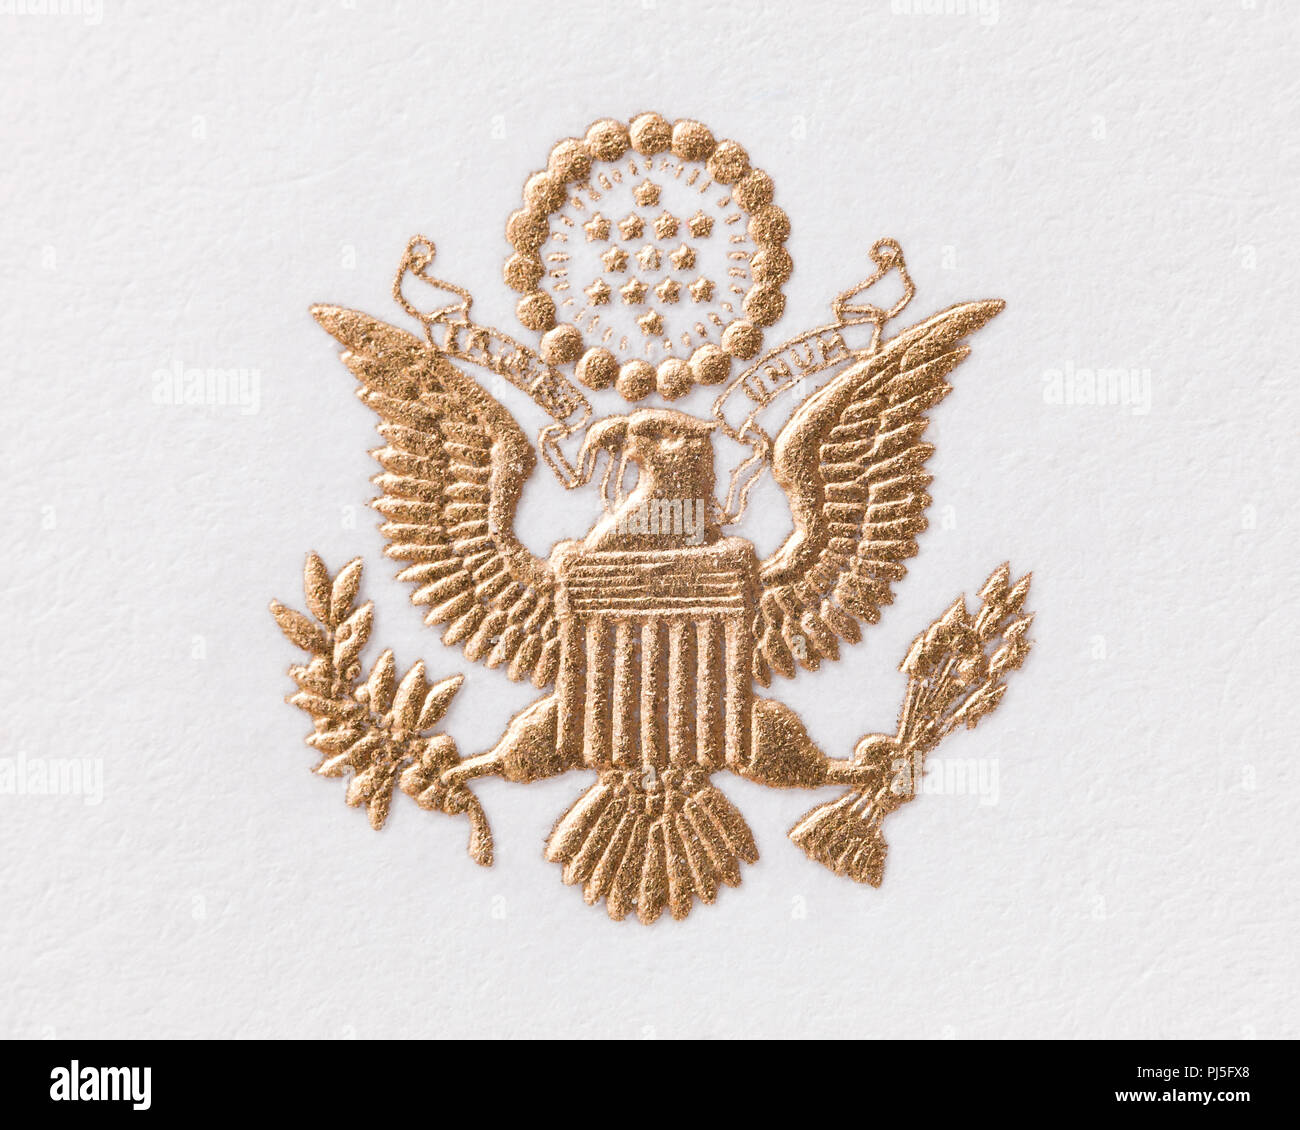 Das große Siegel der Vereinigten Staaten in Blattgold (Großes Siegel der USA), Wappen, Vorderseite - USA Stockfoto